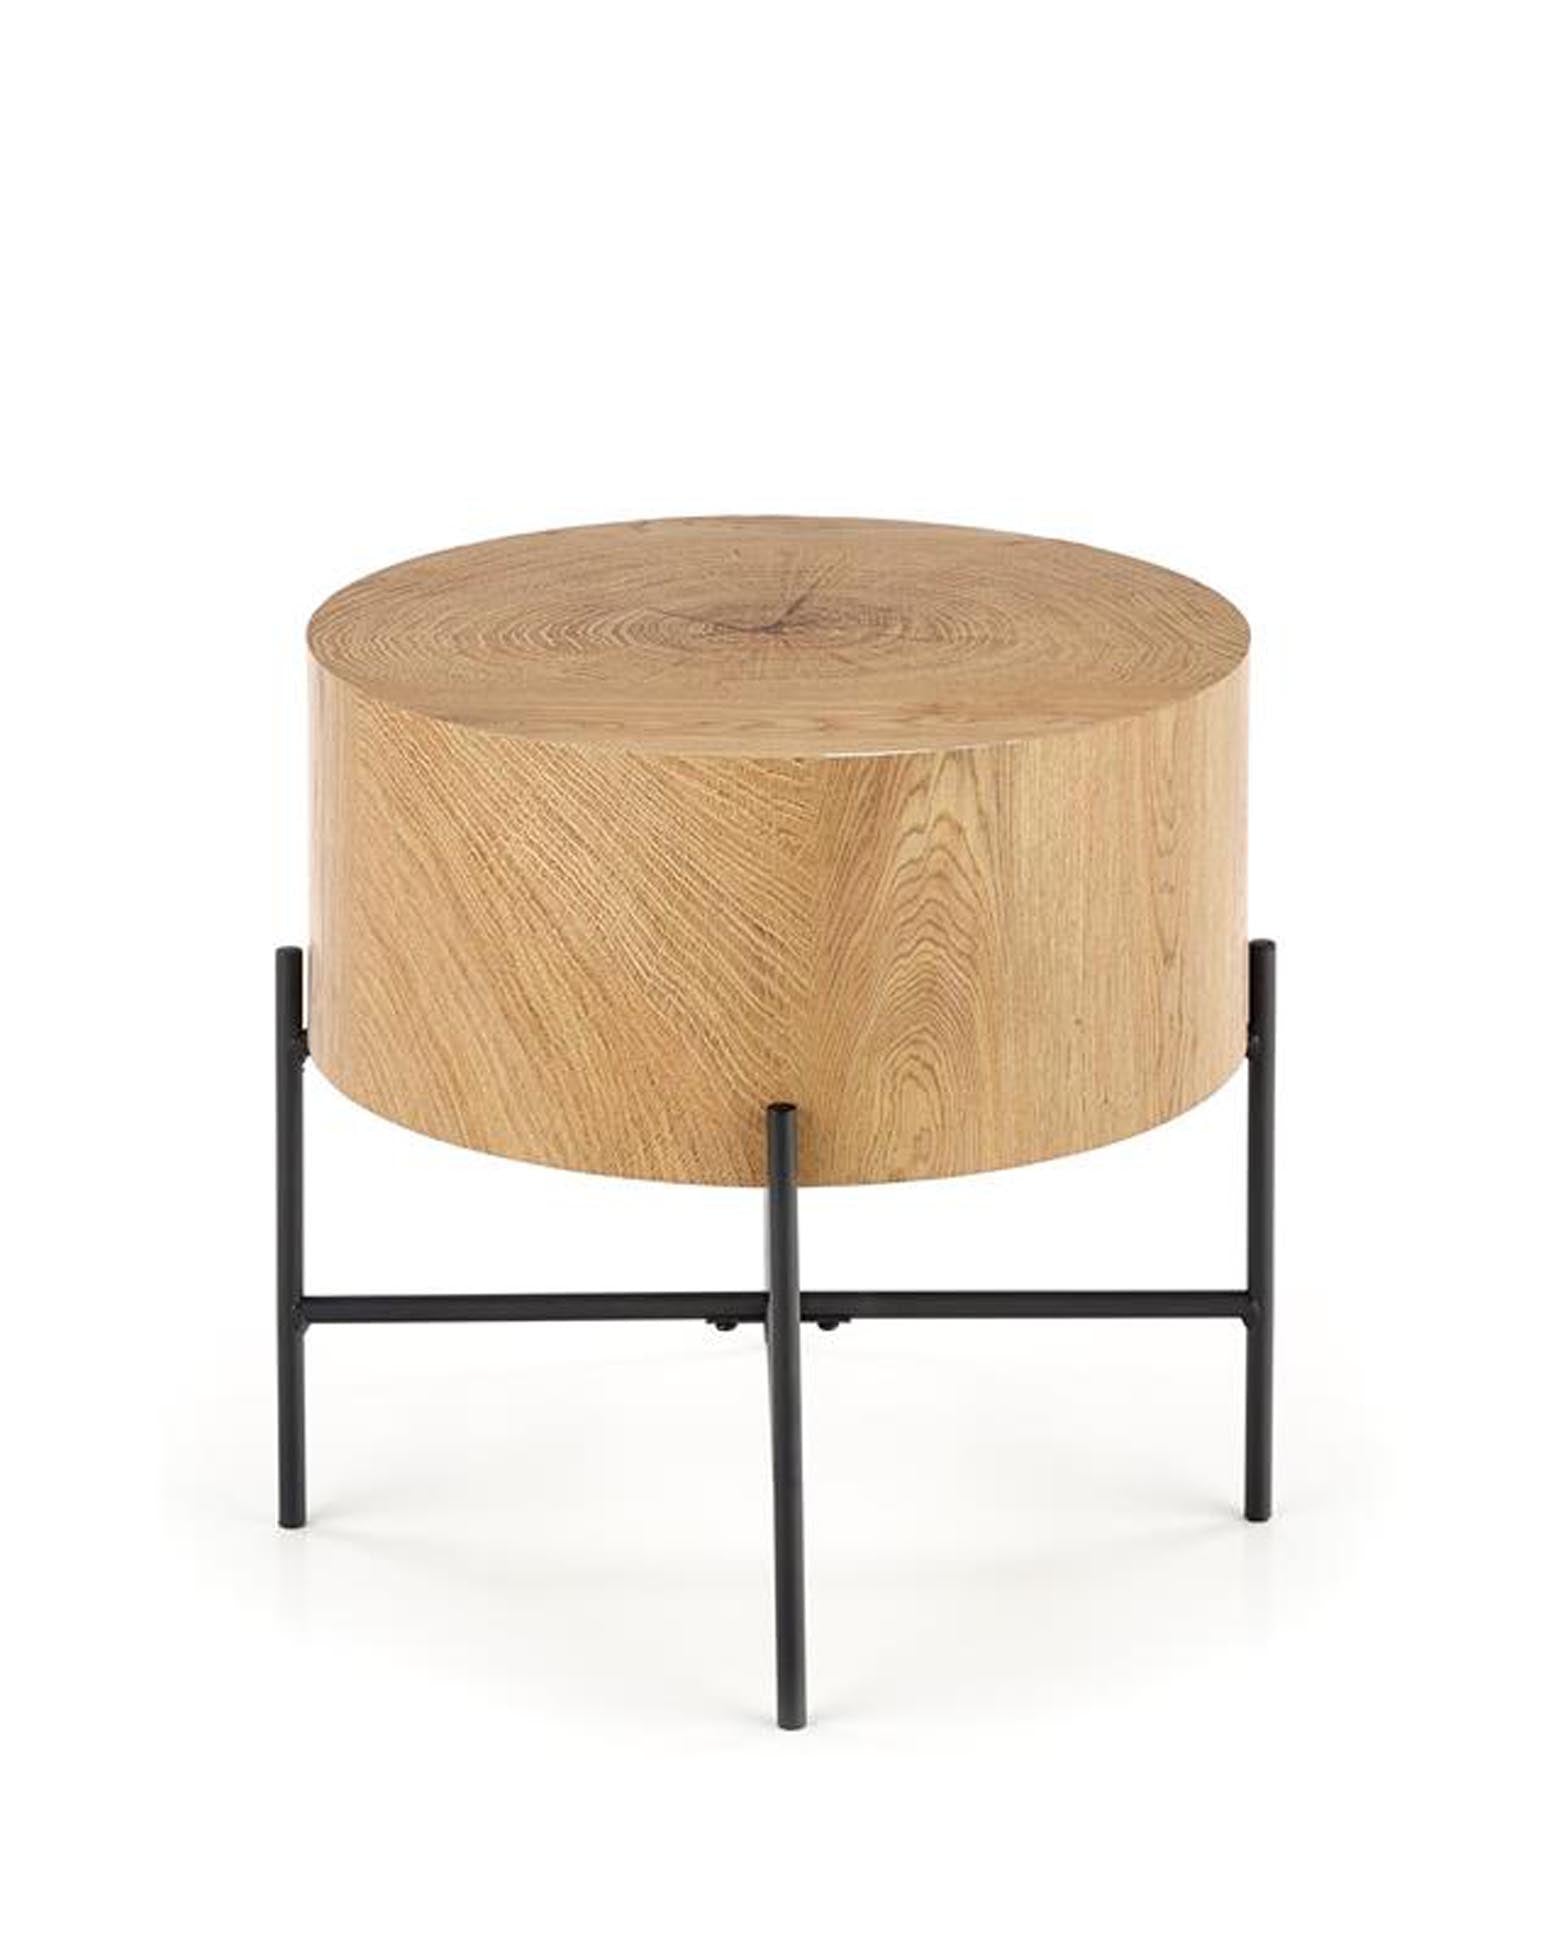 Tischchen mit Holzblock als Tischplatte